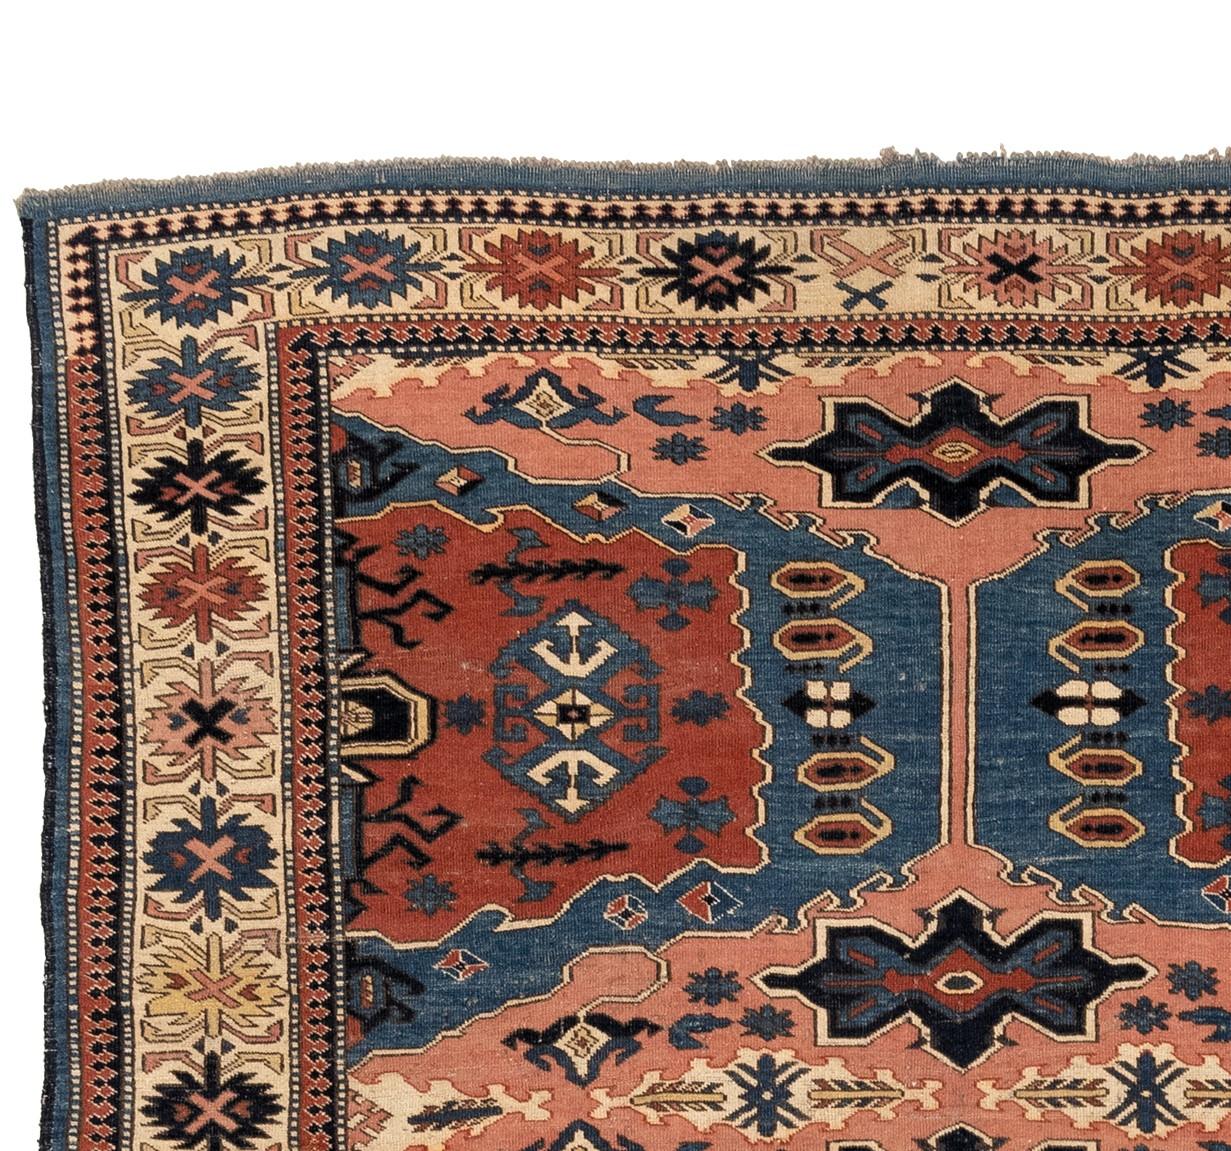 Dieser Pinwheel-Teppich ist eine atemberaubende Hommage an die kasachischen Pinwheel-Teppiche des 19. Jahrhunderts. Das kühne Farbschema mischt satte Blautöne, Pfirsichtöne und feurige Rottöne mit Elfenbeinblau, tiefem Marineblau und frischem Grün